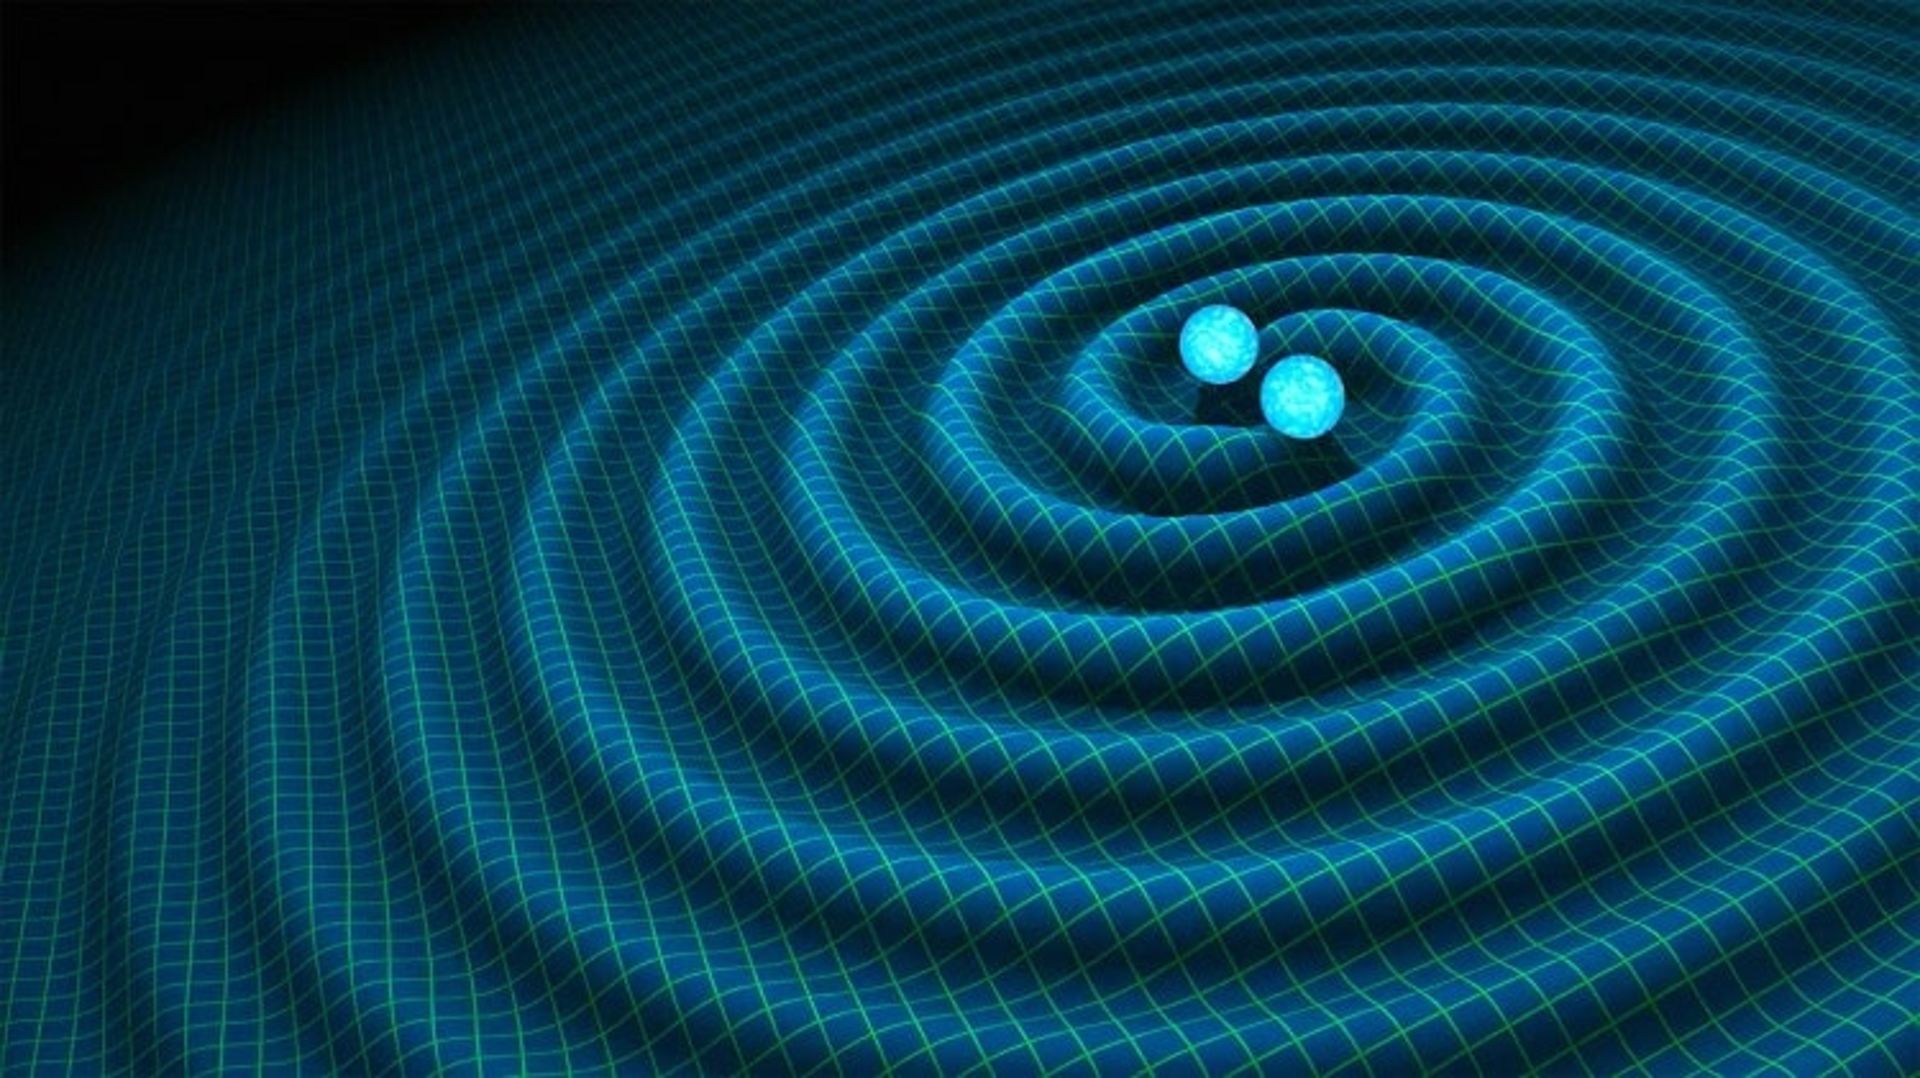 مرجع متخصصين ايران امواج گرانشي gravitational waves